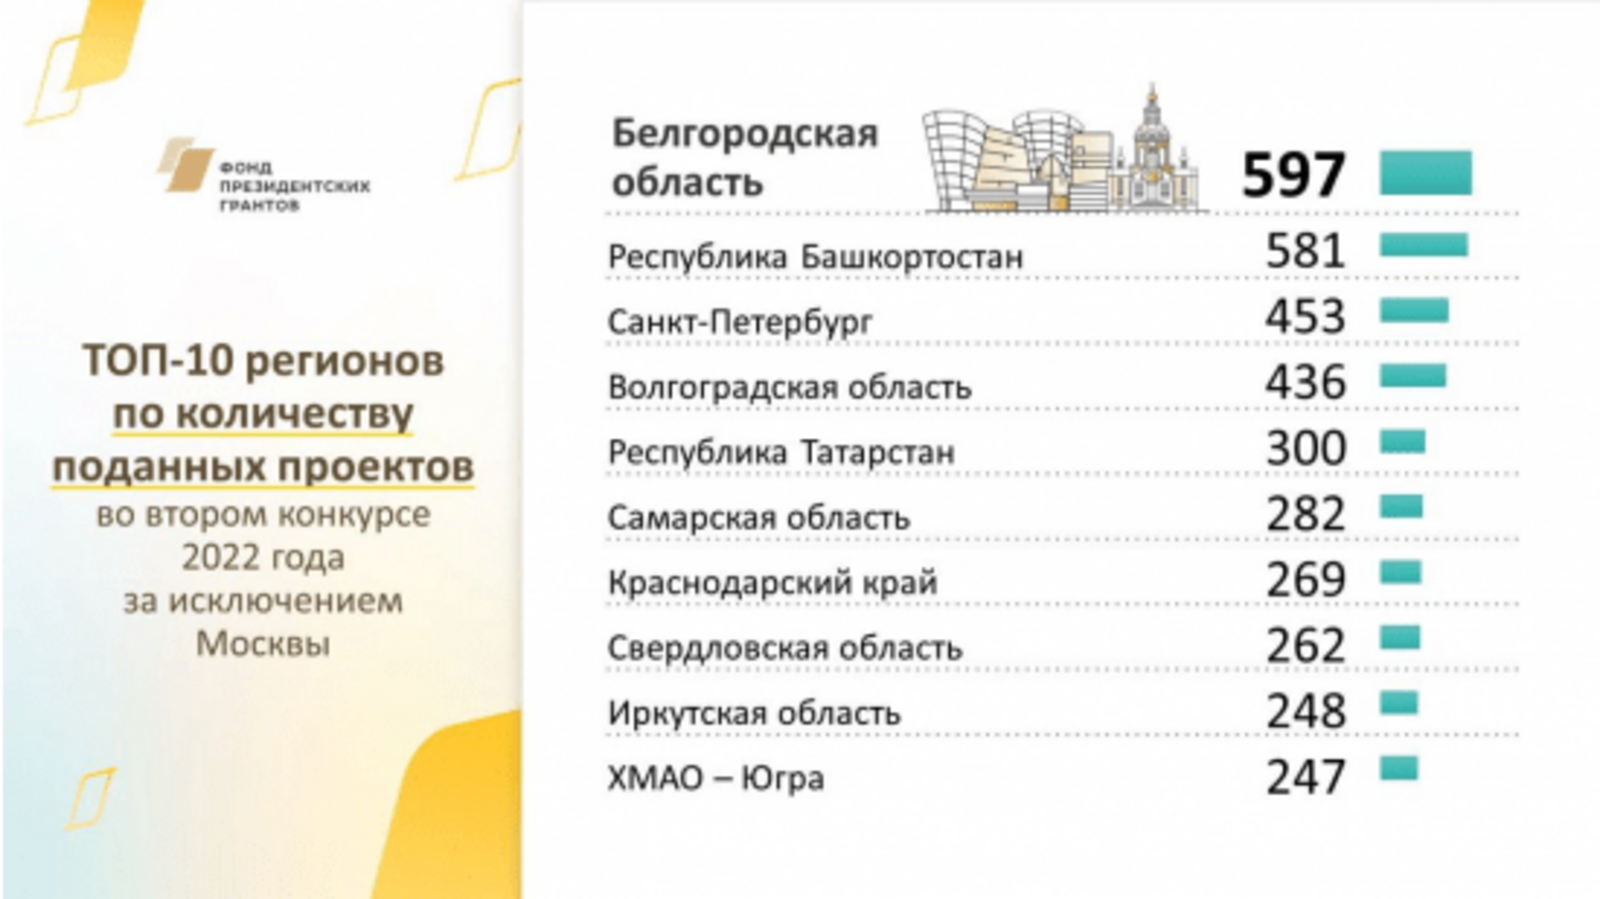 По итогам 2-ого конкурса президентских грантов Башкортостан - второй по активности регион в России